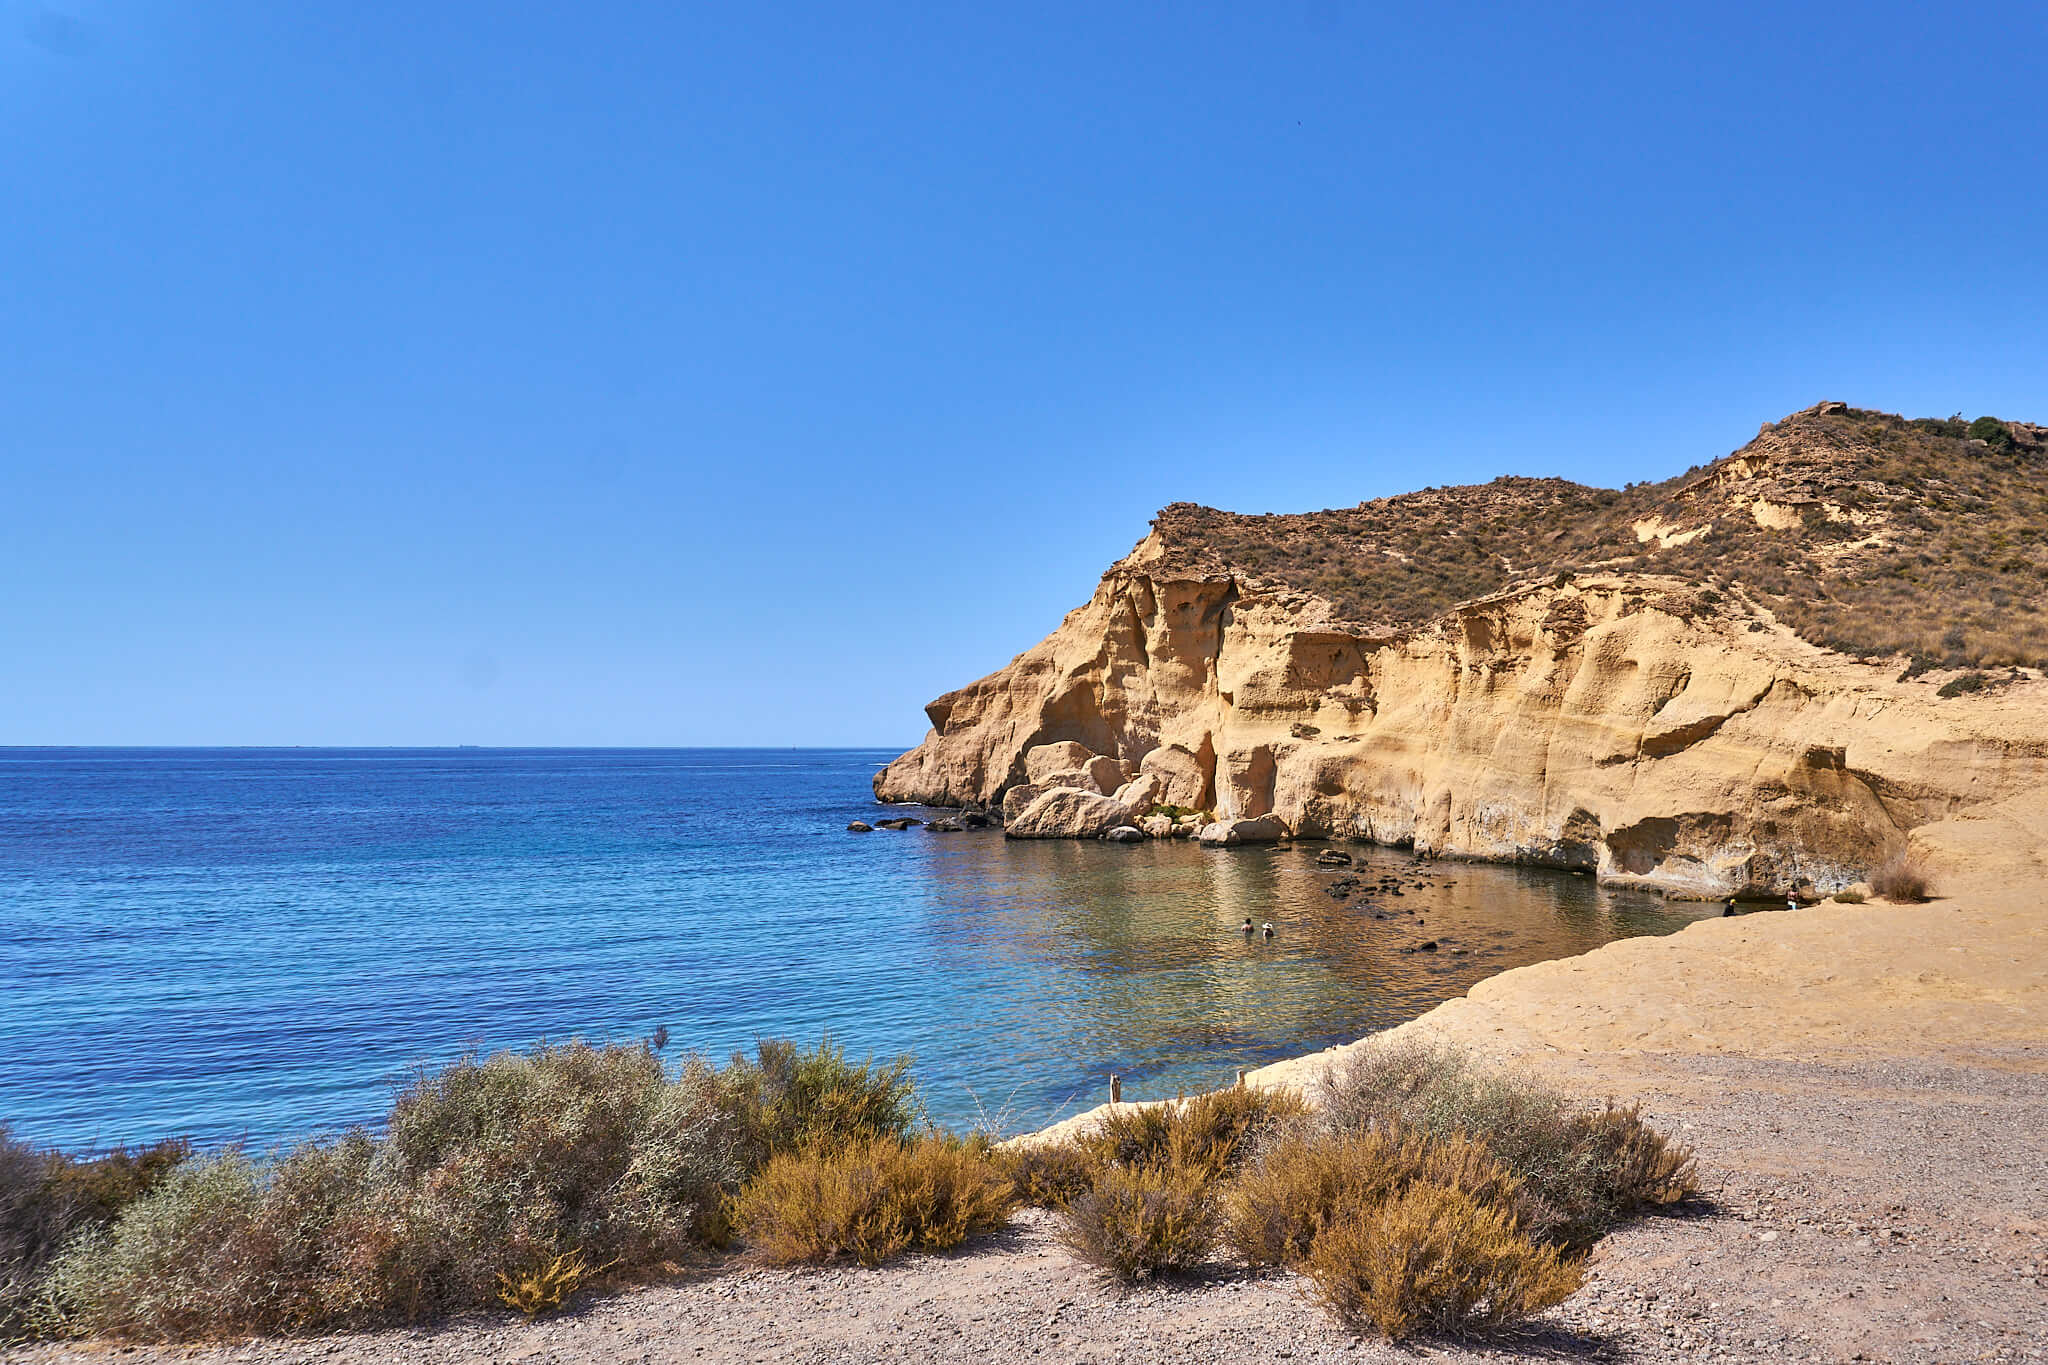 Beautiful Spanish Mediterranean Coast: 2 Weeks Road Trip in Spain